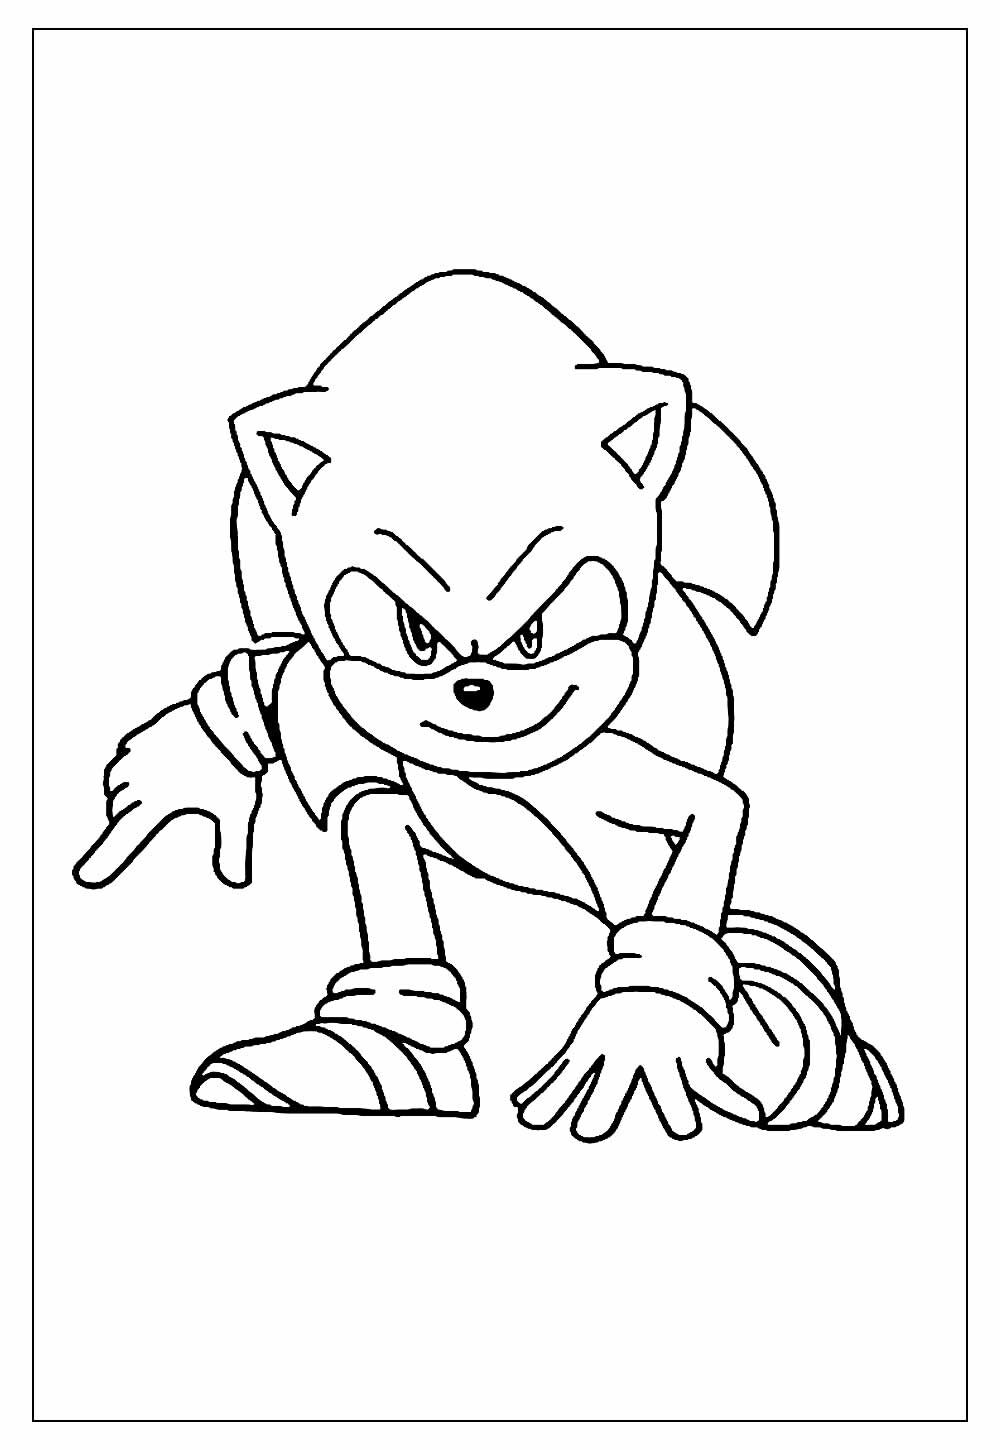 Desenhos do Sonic - Modelos para Colorir